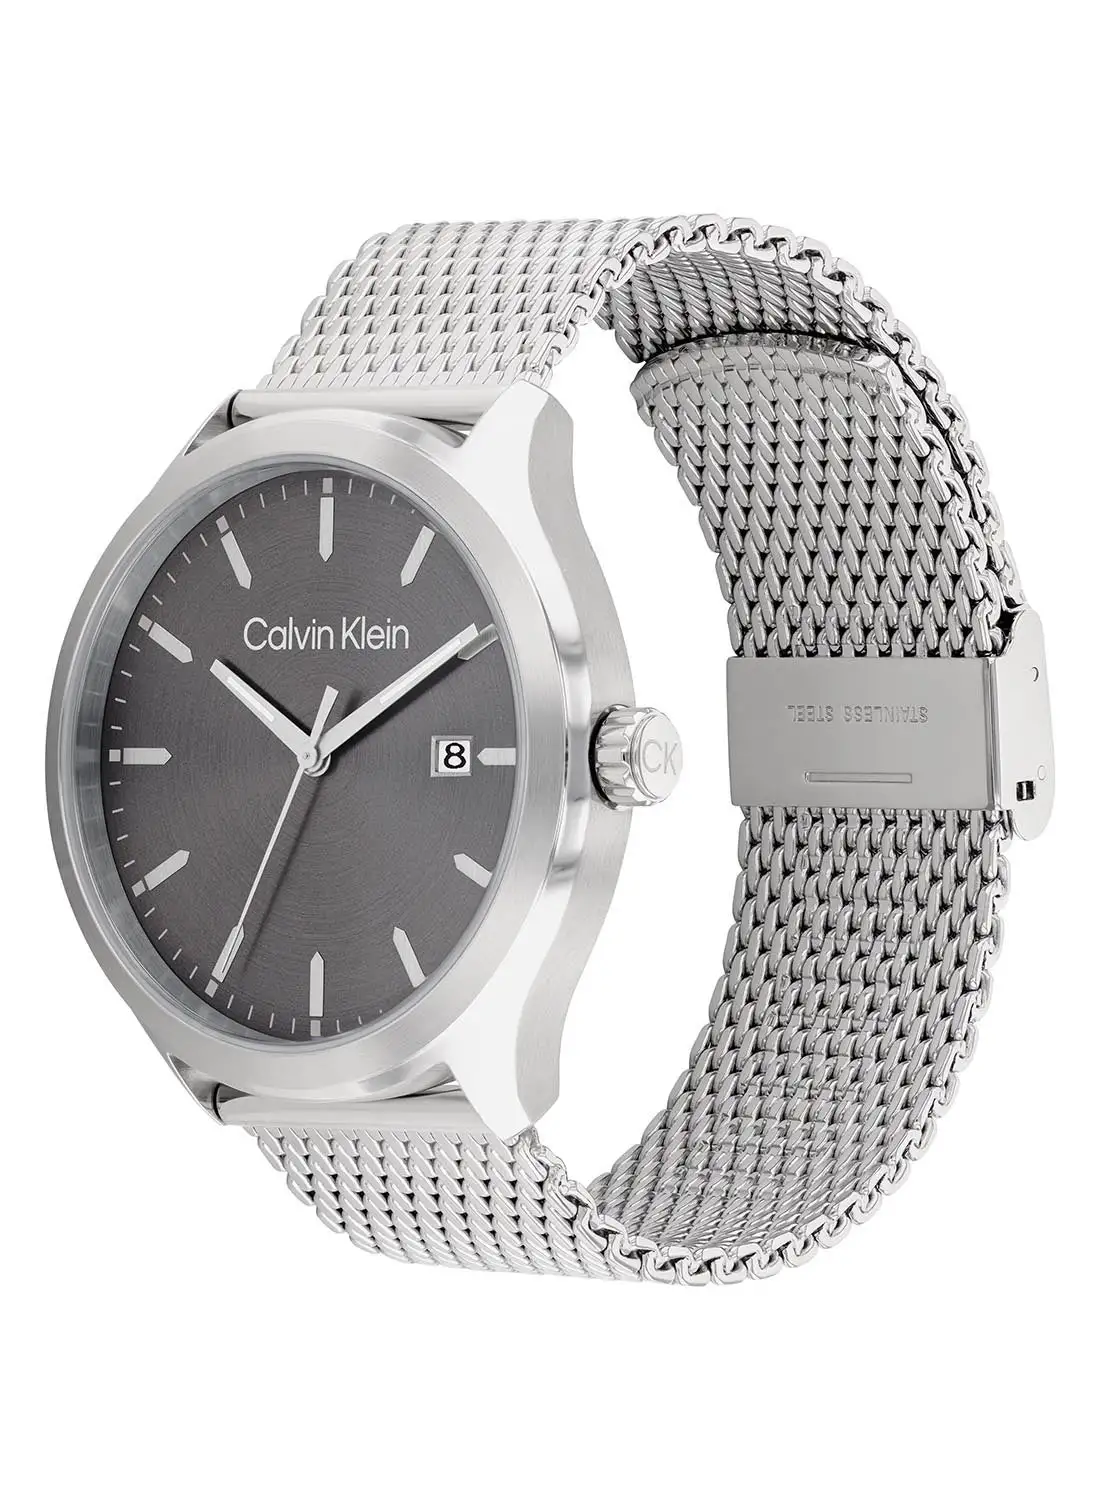 CALVIN KLEIN Men's Analog Round Shape Stainless Steel Wrist Watch 25200352 - 43 Mm